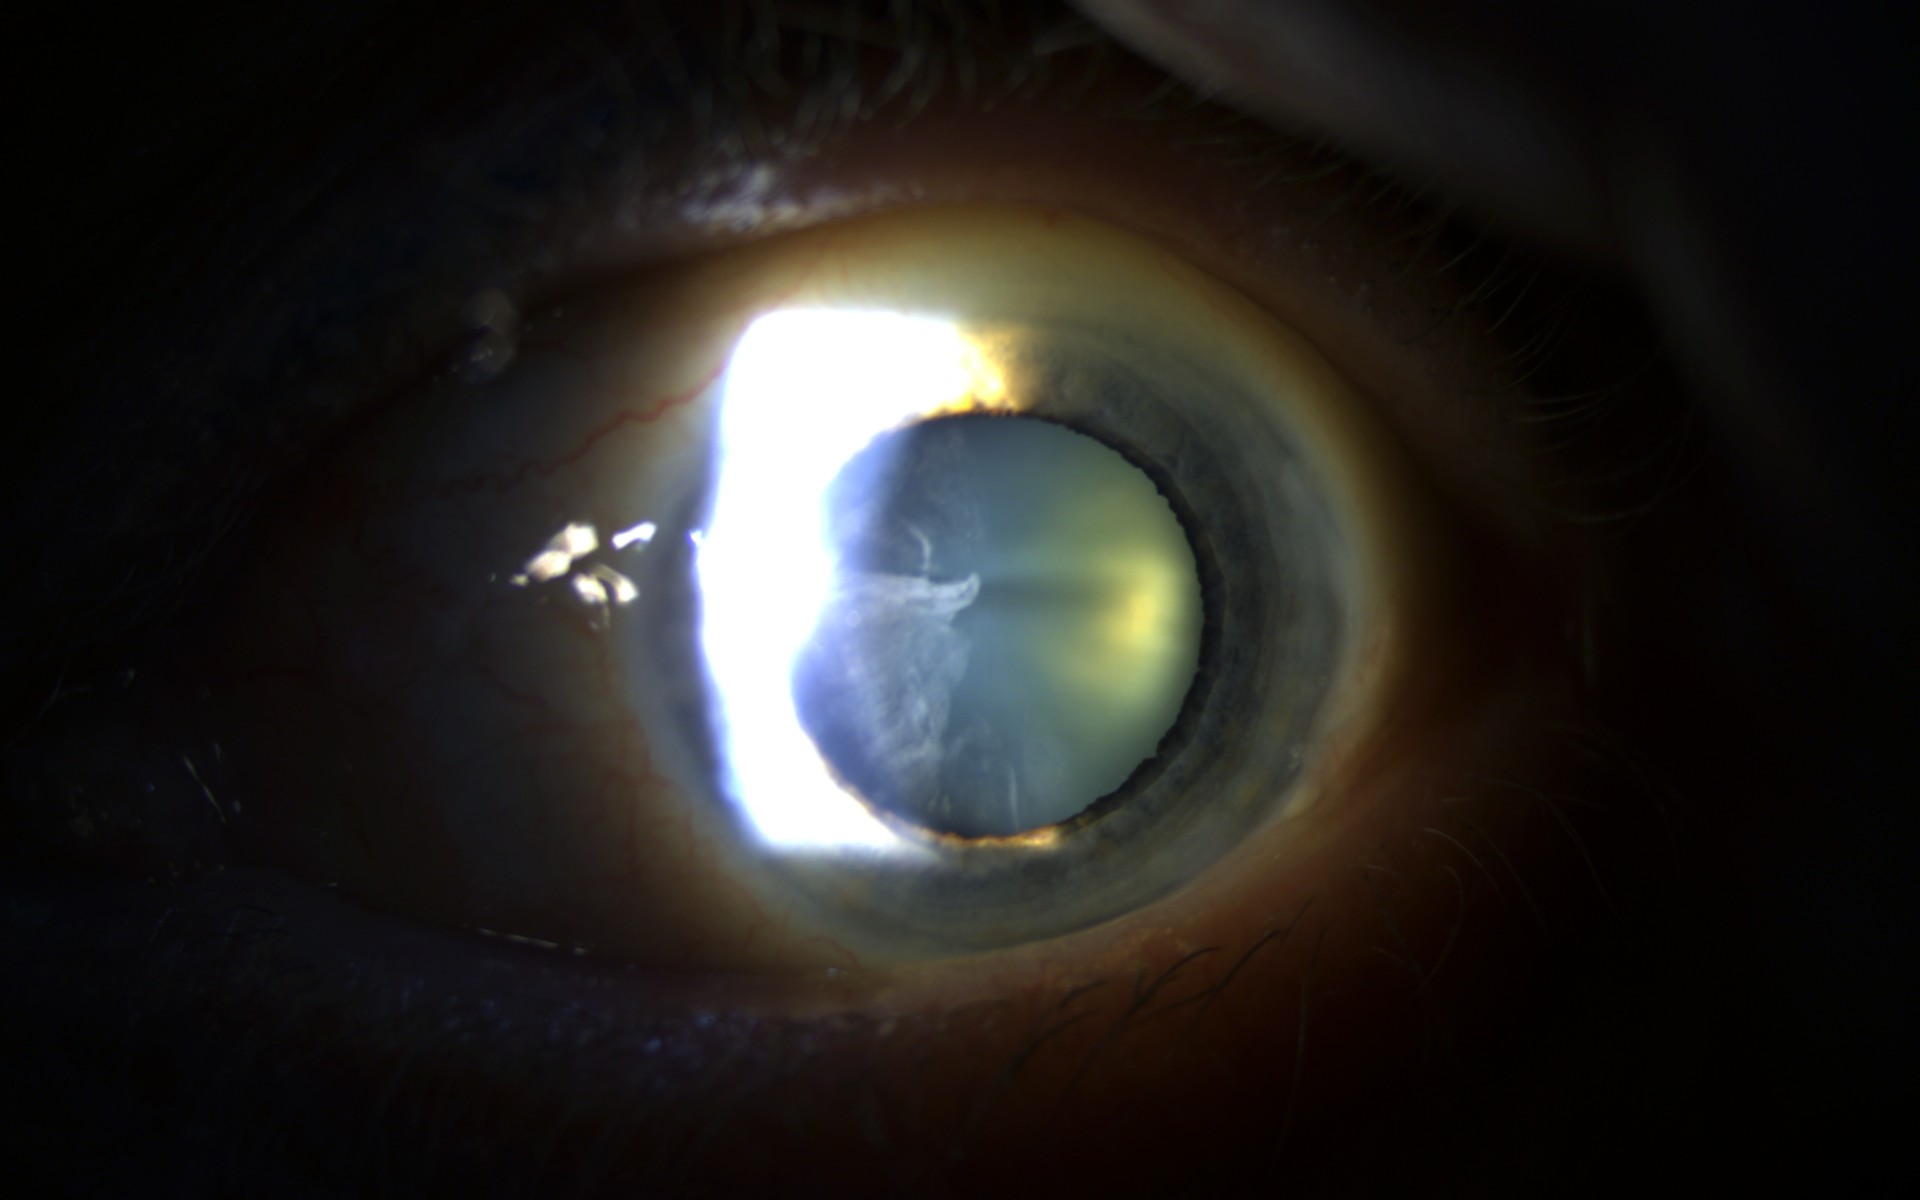 Slit lamp examination showing cataract